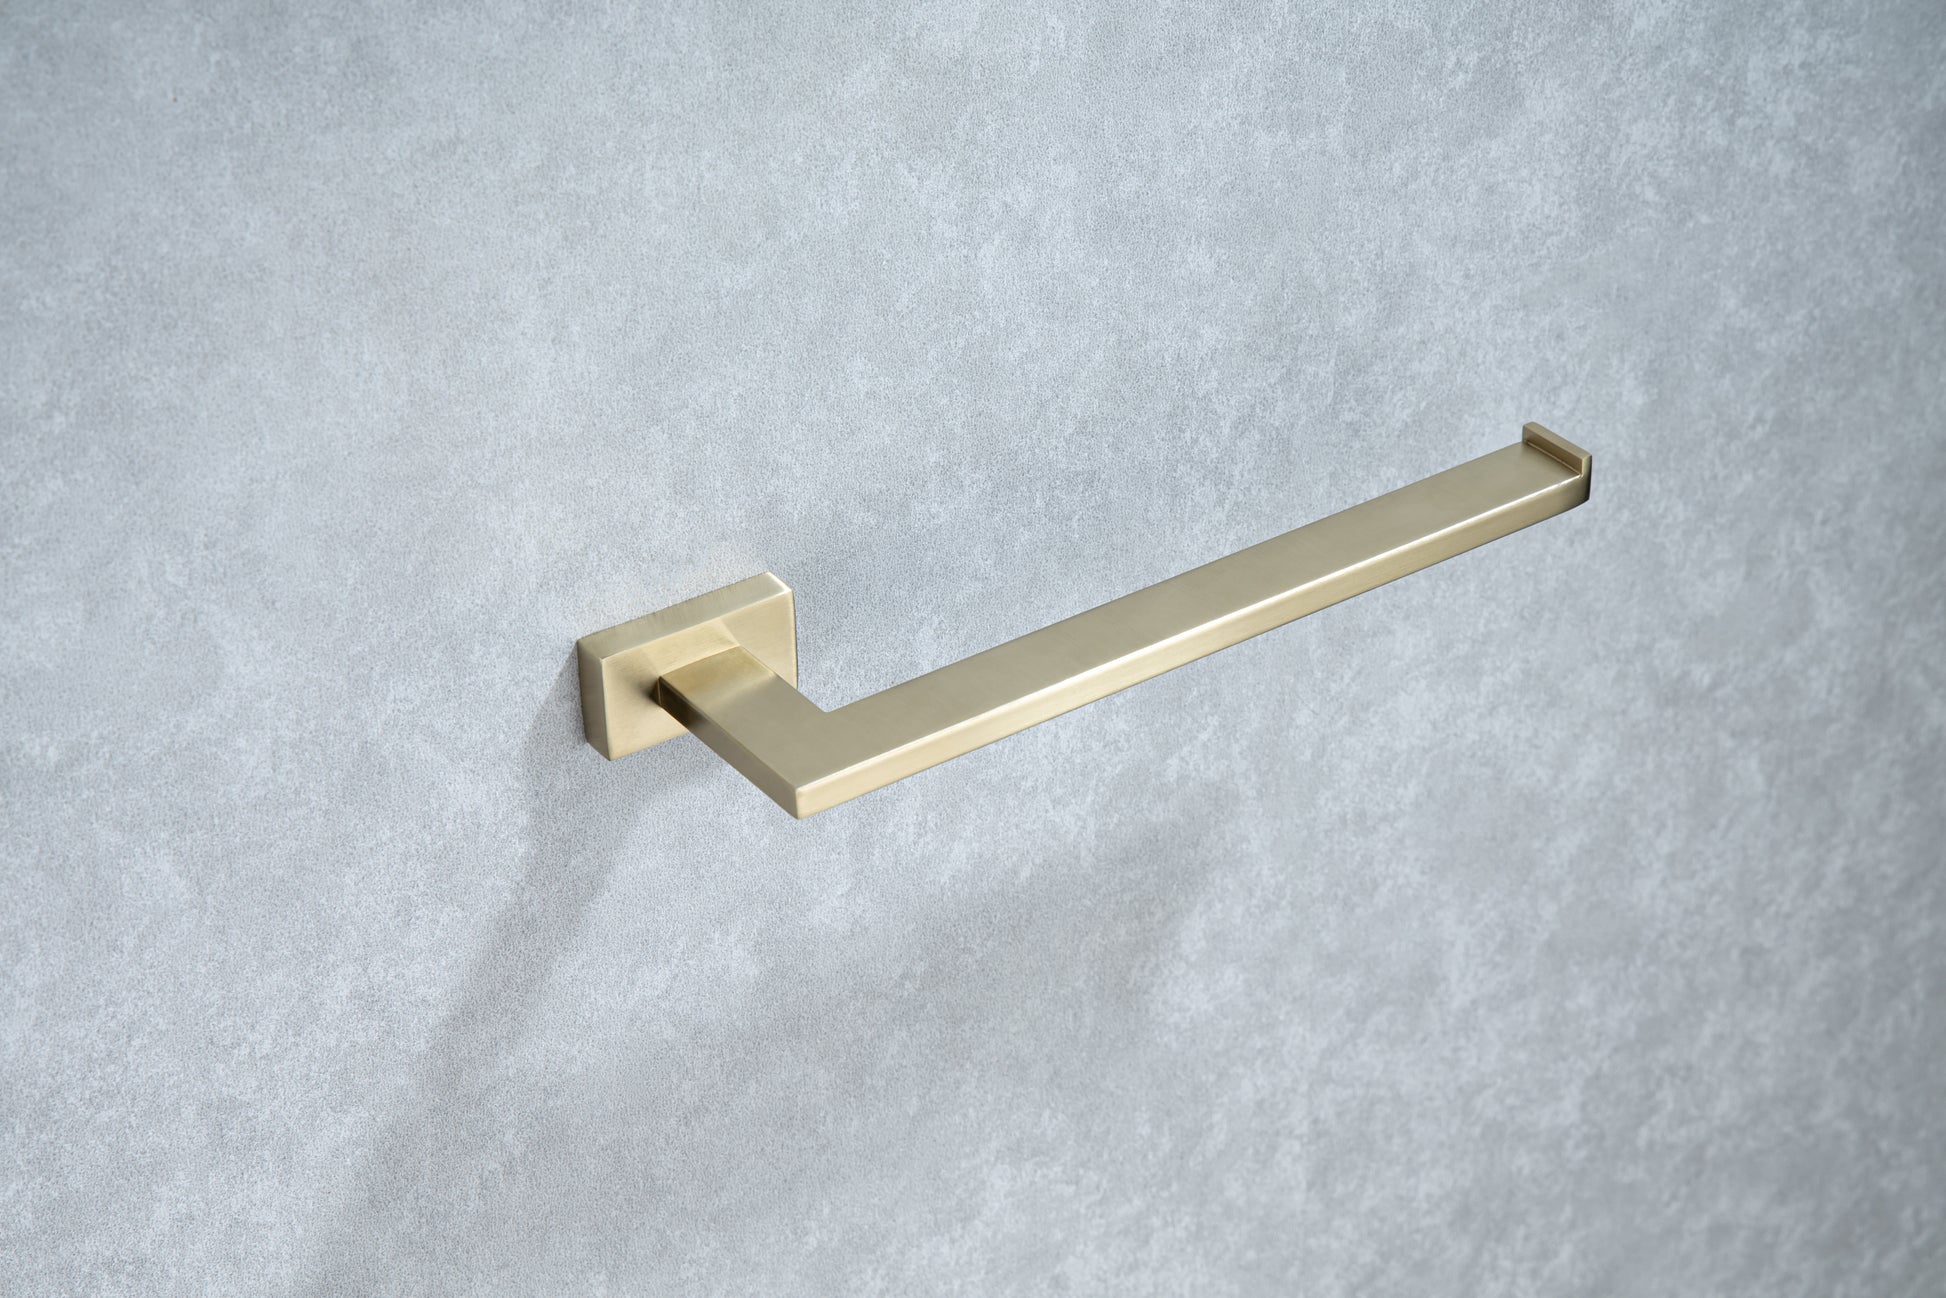 5 Piece Bathroom Hardware Set golden-stainless steel